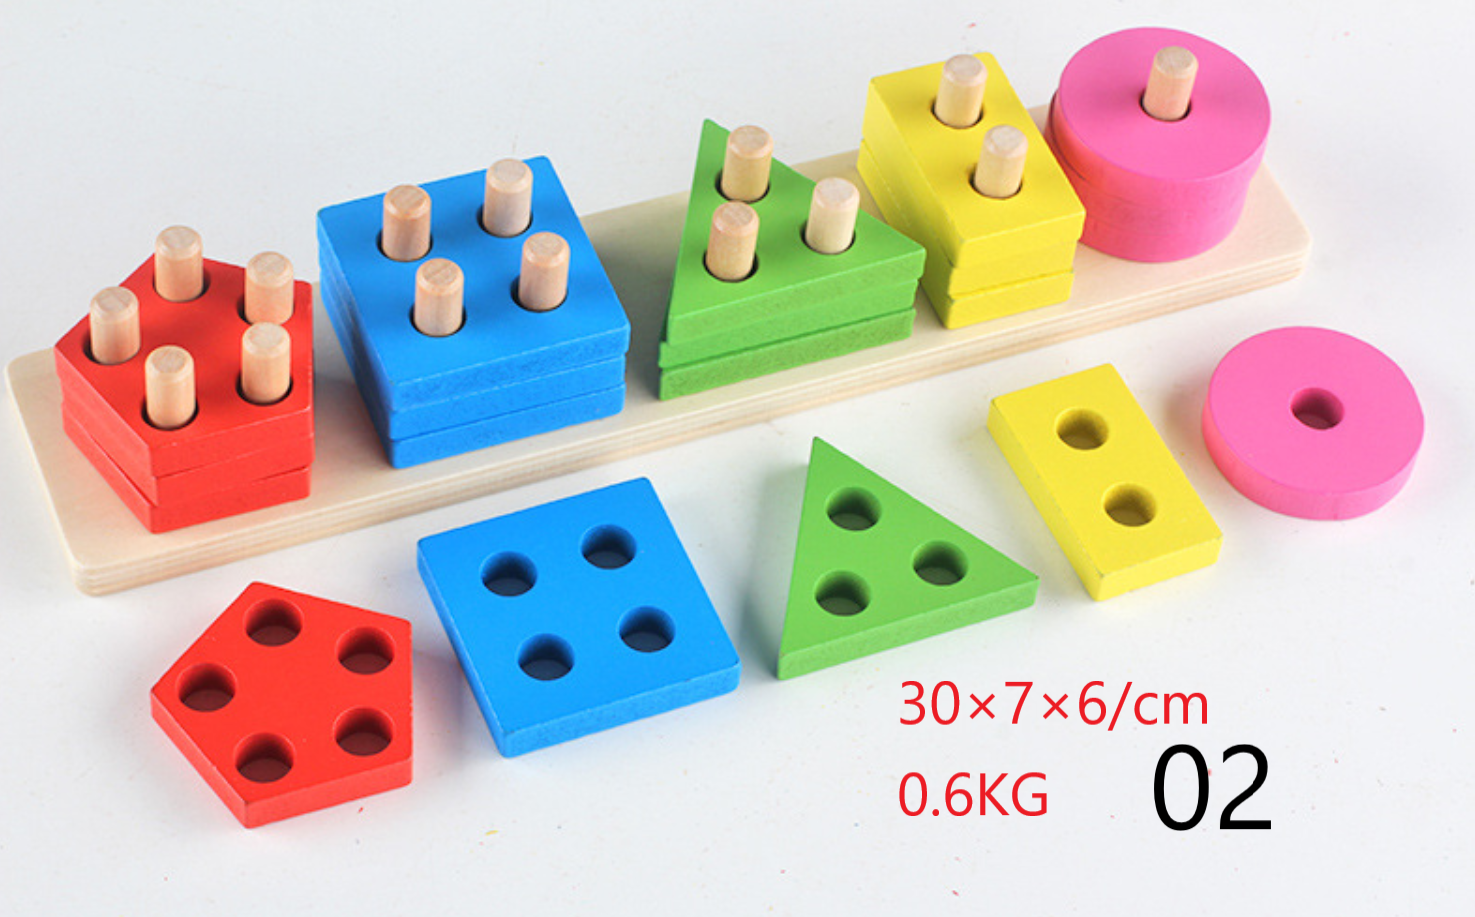 ของเล่นไม้ 4 หลัก เสริมทักษะการแยกรูปทรง เสริมพัฒนาการด้าน IQ/EQ วัสดุทำด้วยไม้ ขอบเนียนไม่คม ปลอดสารพิษ สำหรับเด็ก 2 ปีขึ้นไป DIY ของเล่น